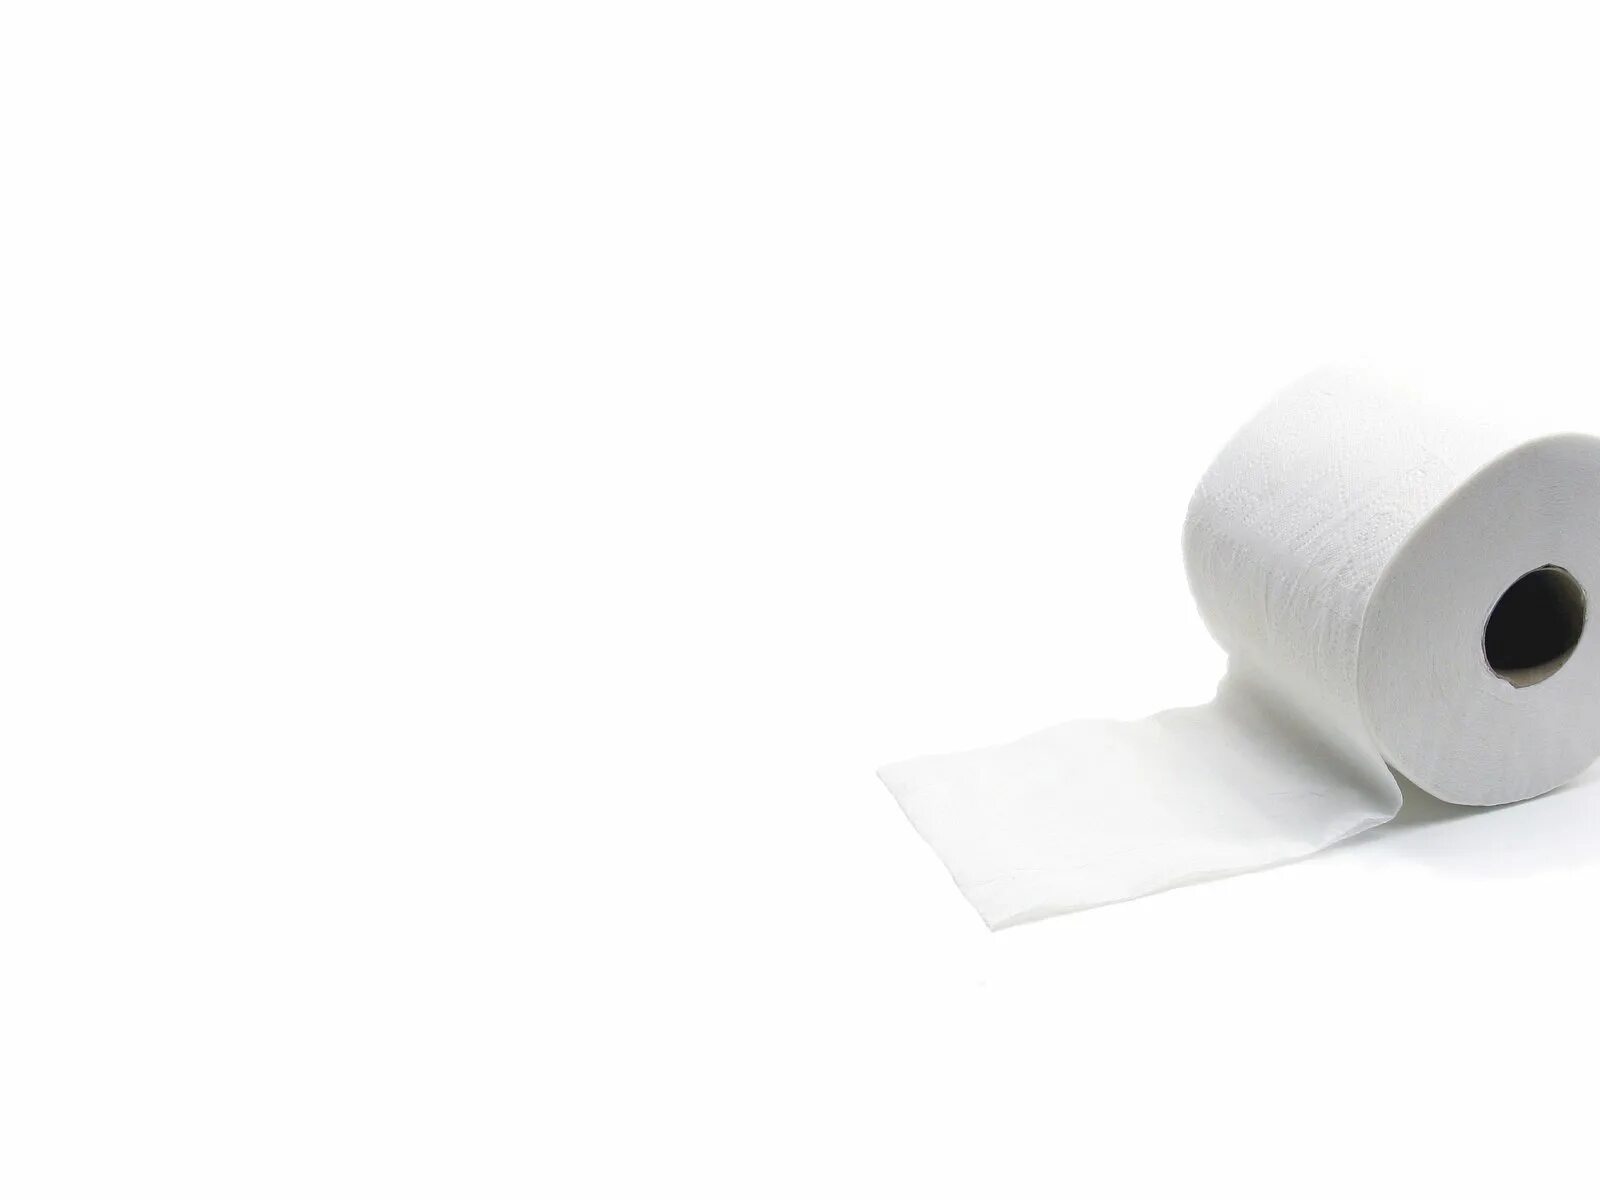 Туалетная бумага. Белая бумага. Рулон бумаги. Текстура туалетной бумаги. Белый цвет бумаги